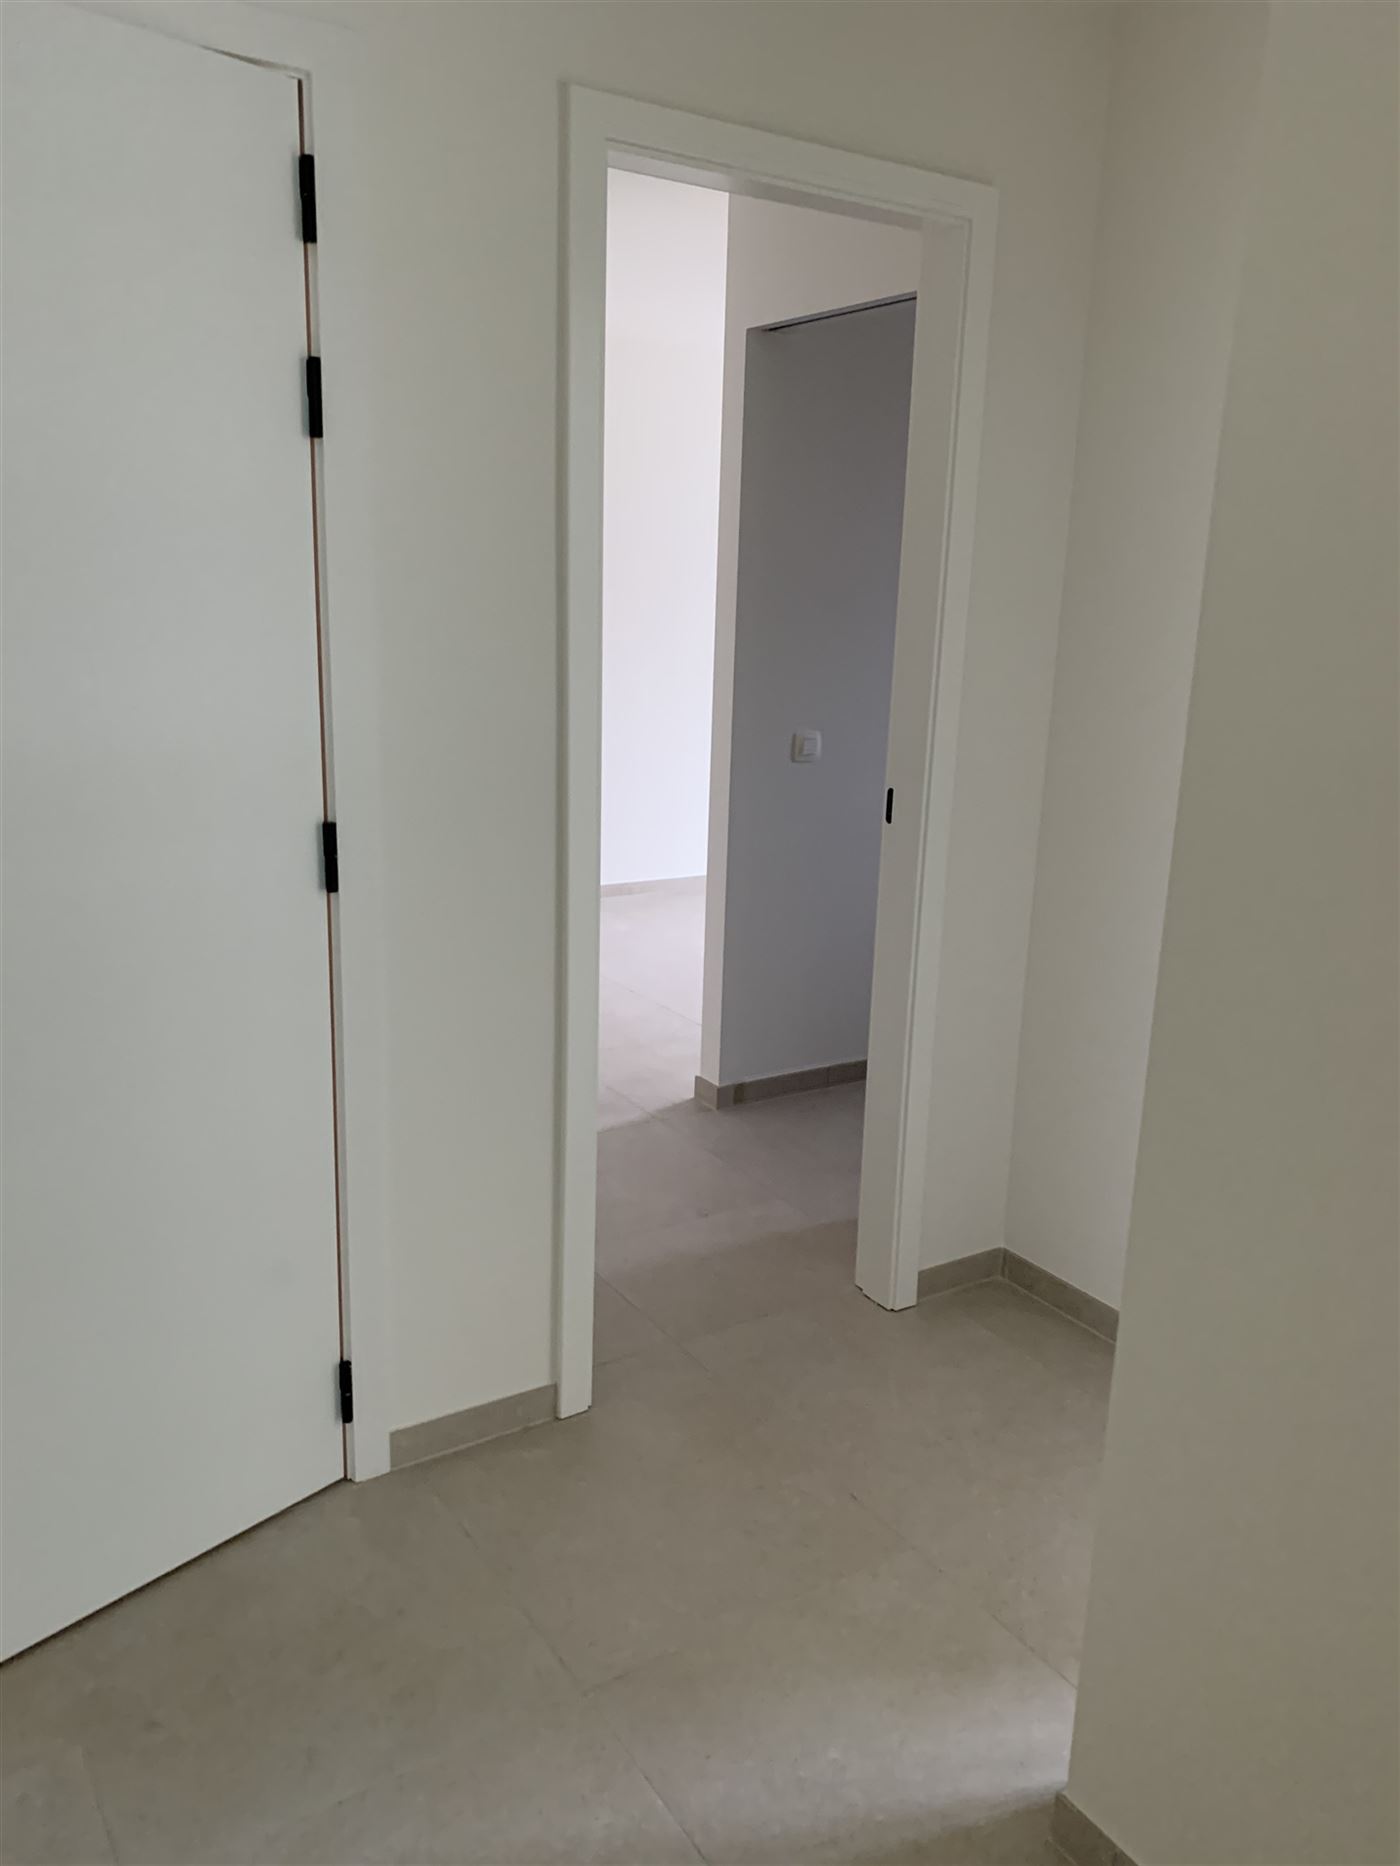 TE HUUR OP JAARBASIS - Ongemeubeld nieuwbouw hoekappartement met 2 slaapkamers - ruime terrassen (46 m²) - appartement is volledig geschilderd en ins...